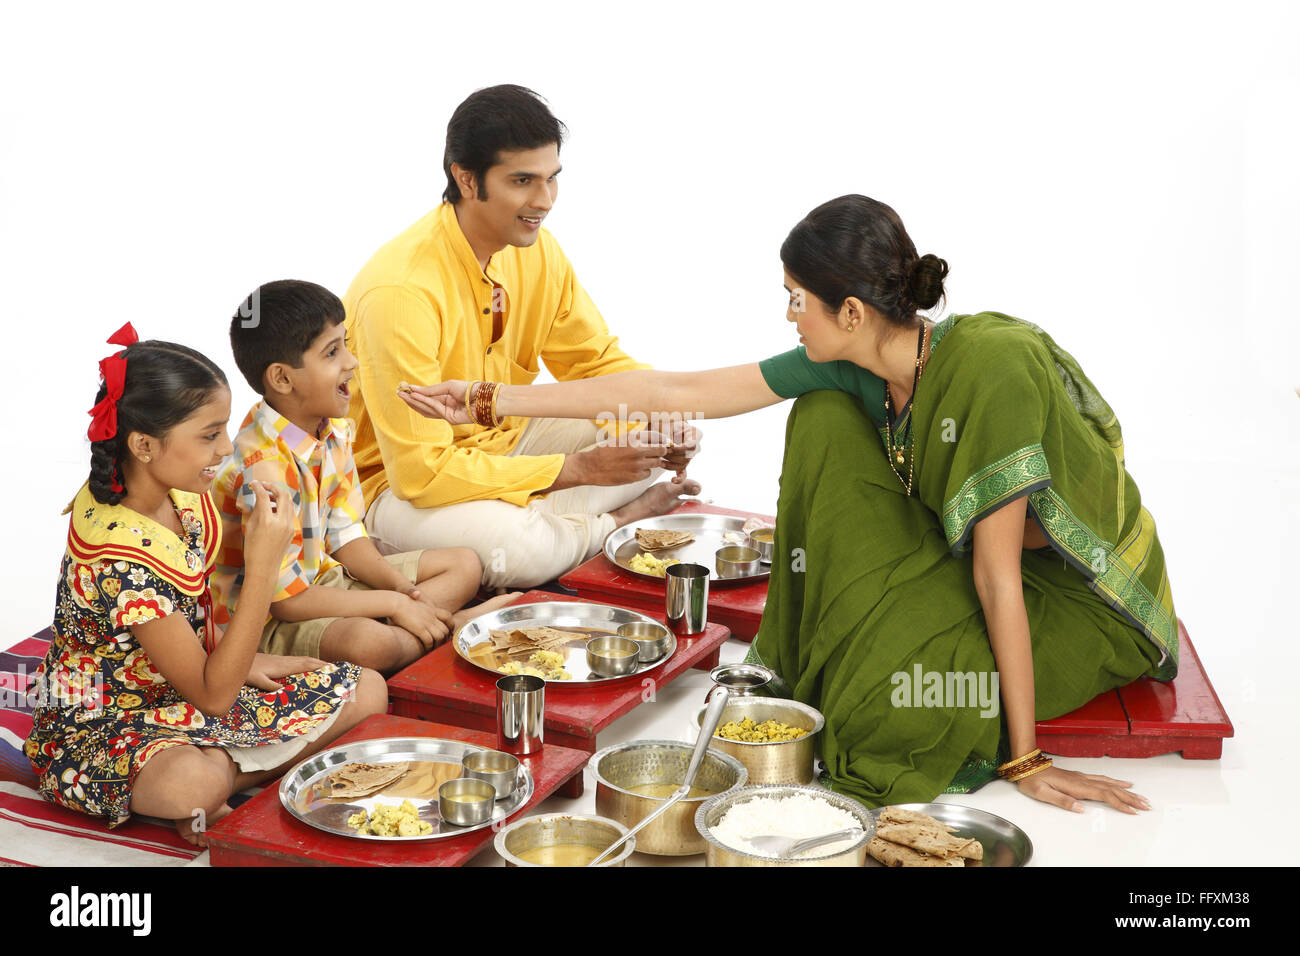 Familia india comiendo el almuerzo, padre y dos niños comiendo la comida y madre alimentando hijo, India, Asia, MR#743A,743B,743C,743D Foto de stock